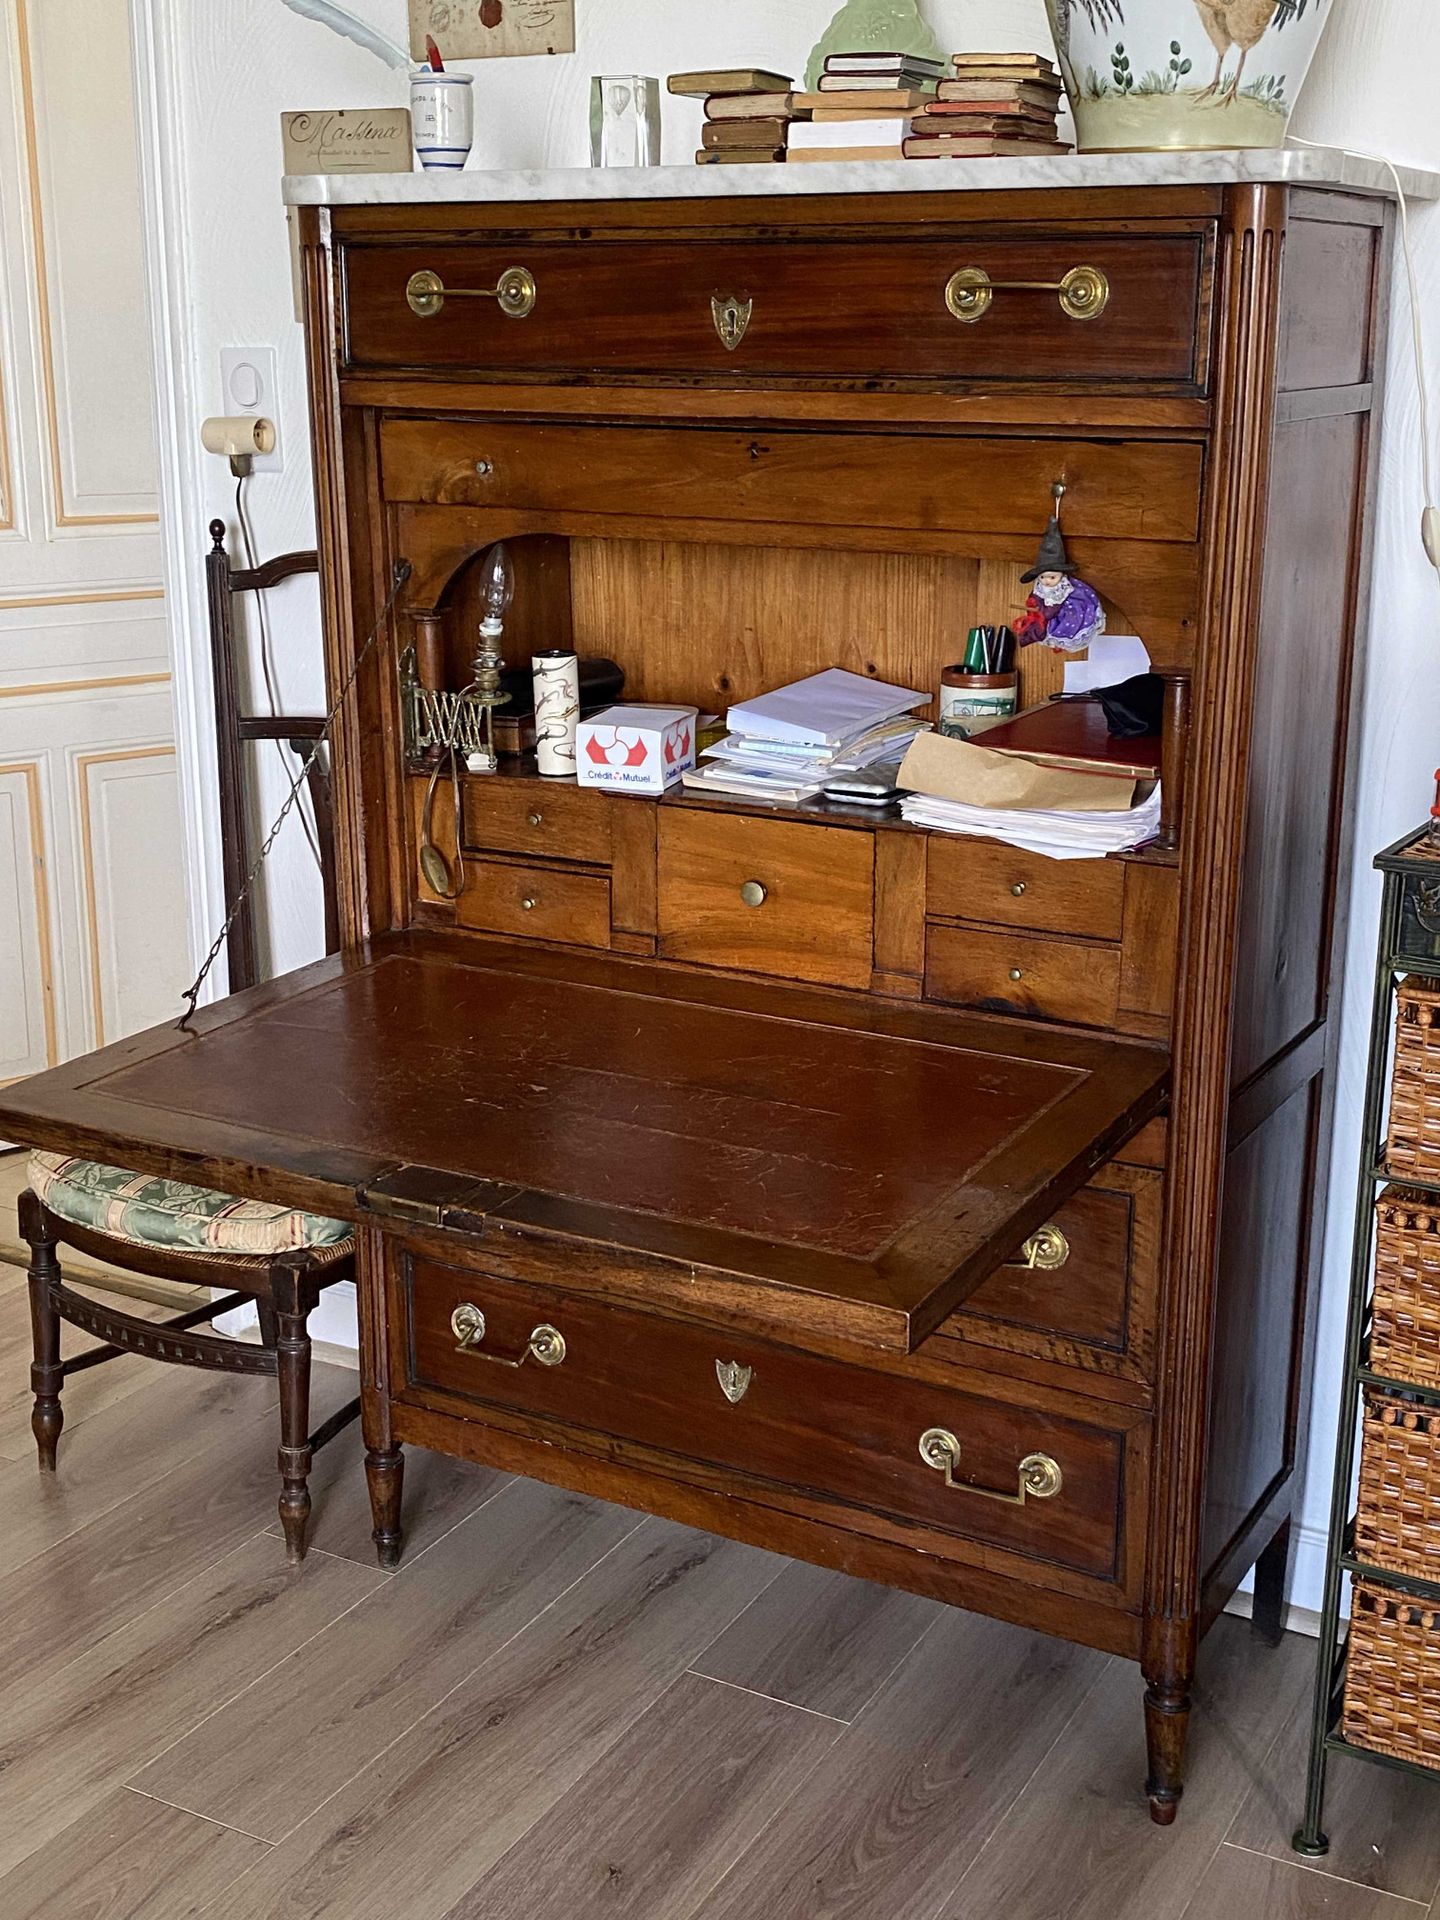 Null 桃花心木和桃花心木饰面的办公桌，上部有一个抽屉，下部有一个挡板和两个抽屉。大理石顶部。

路易十六时期